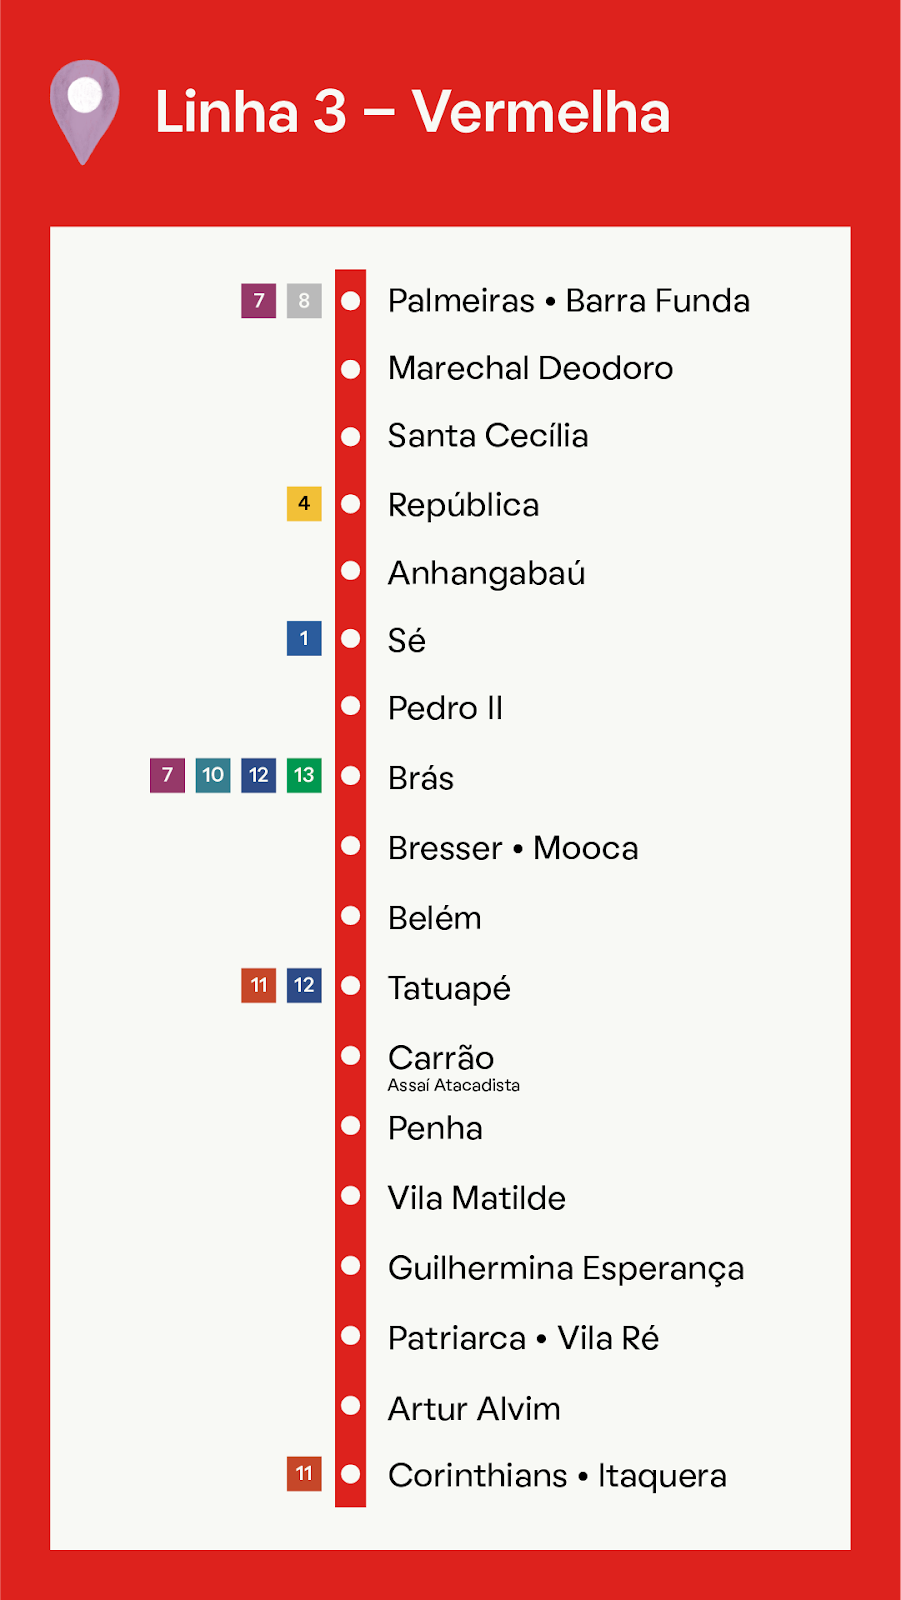 Foto que ilustra as estações da Linha 3- Vermelha, a Estação Brás pertence à ela.